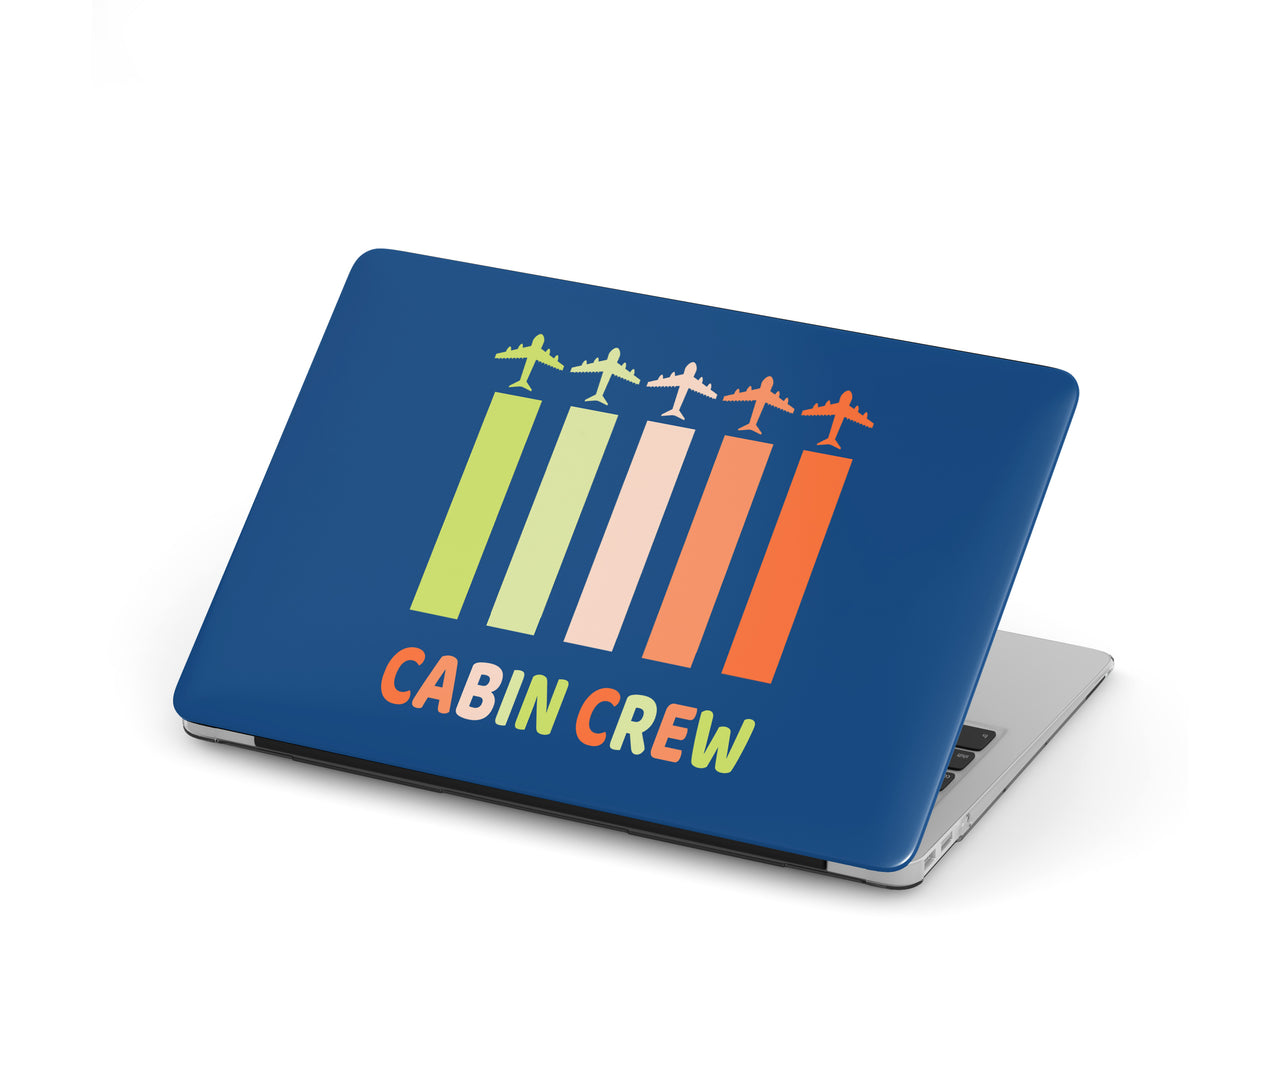 Colourful Cabin Crew Designed Macbook Cases